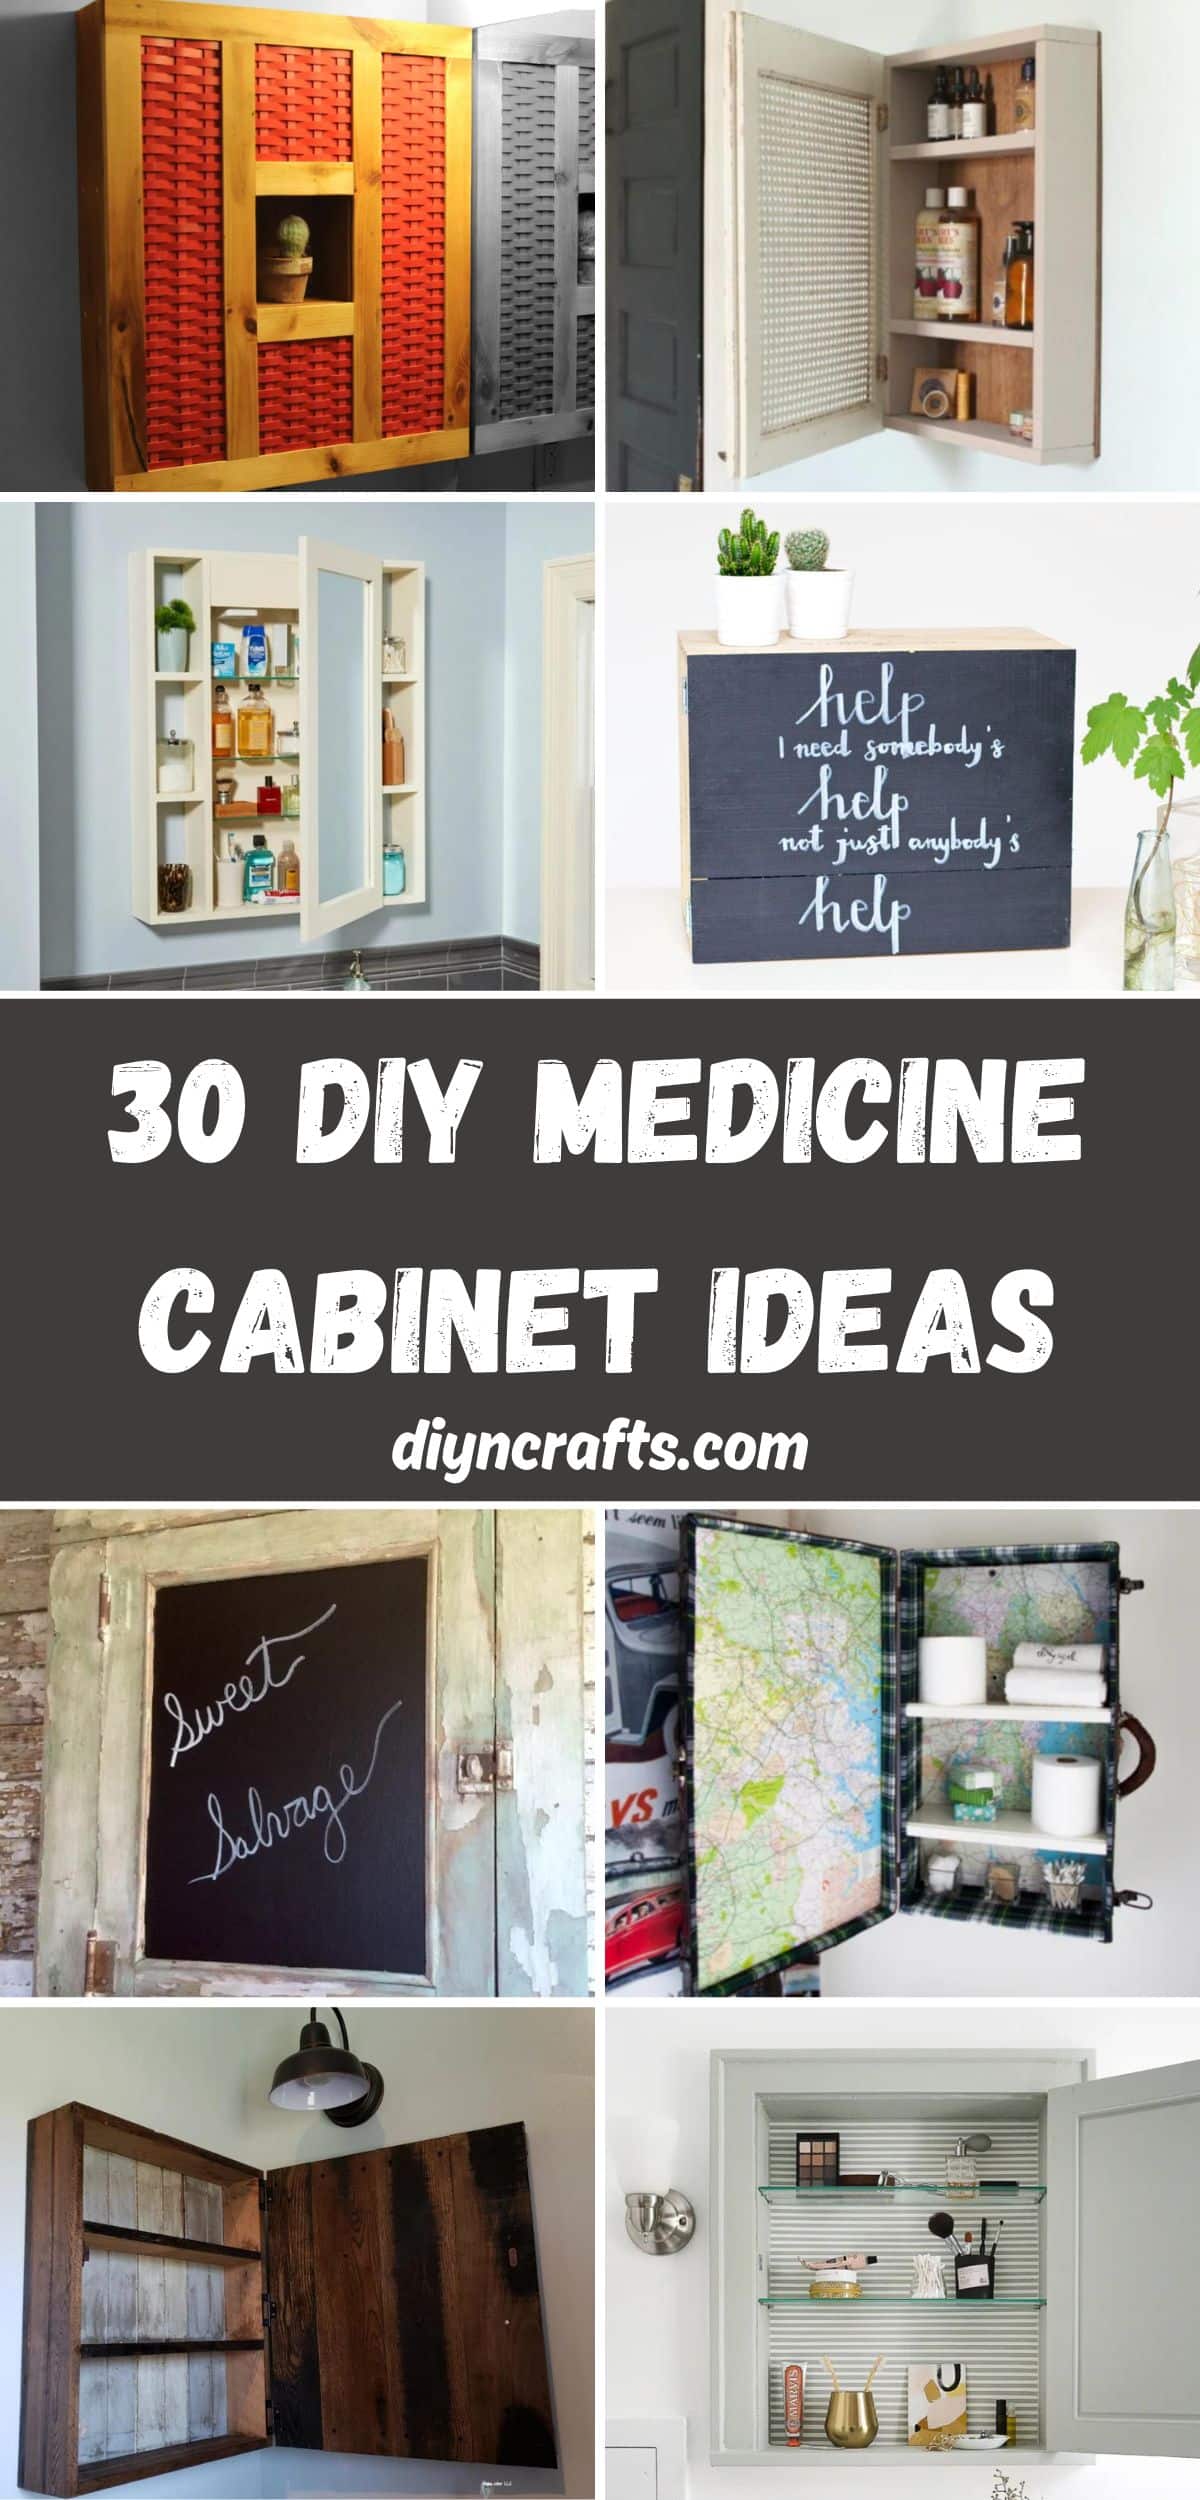 30 DIY Medicine Cabinet Ideas collage.